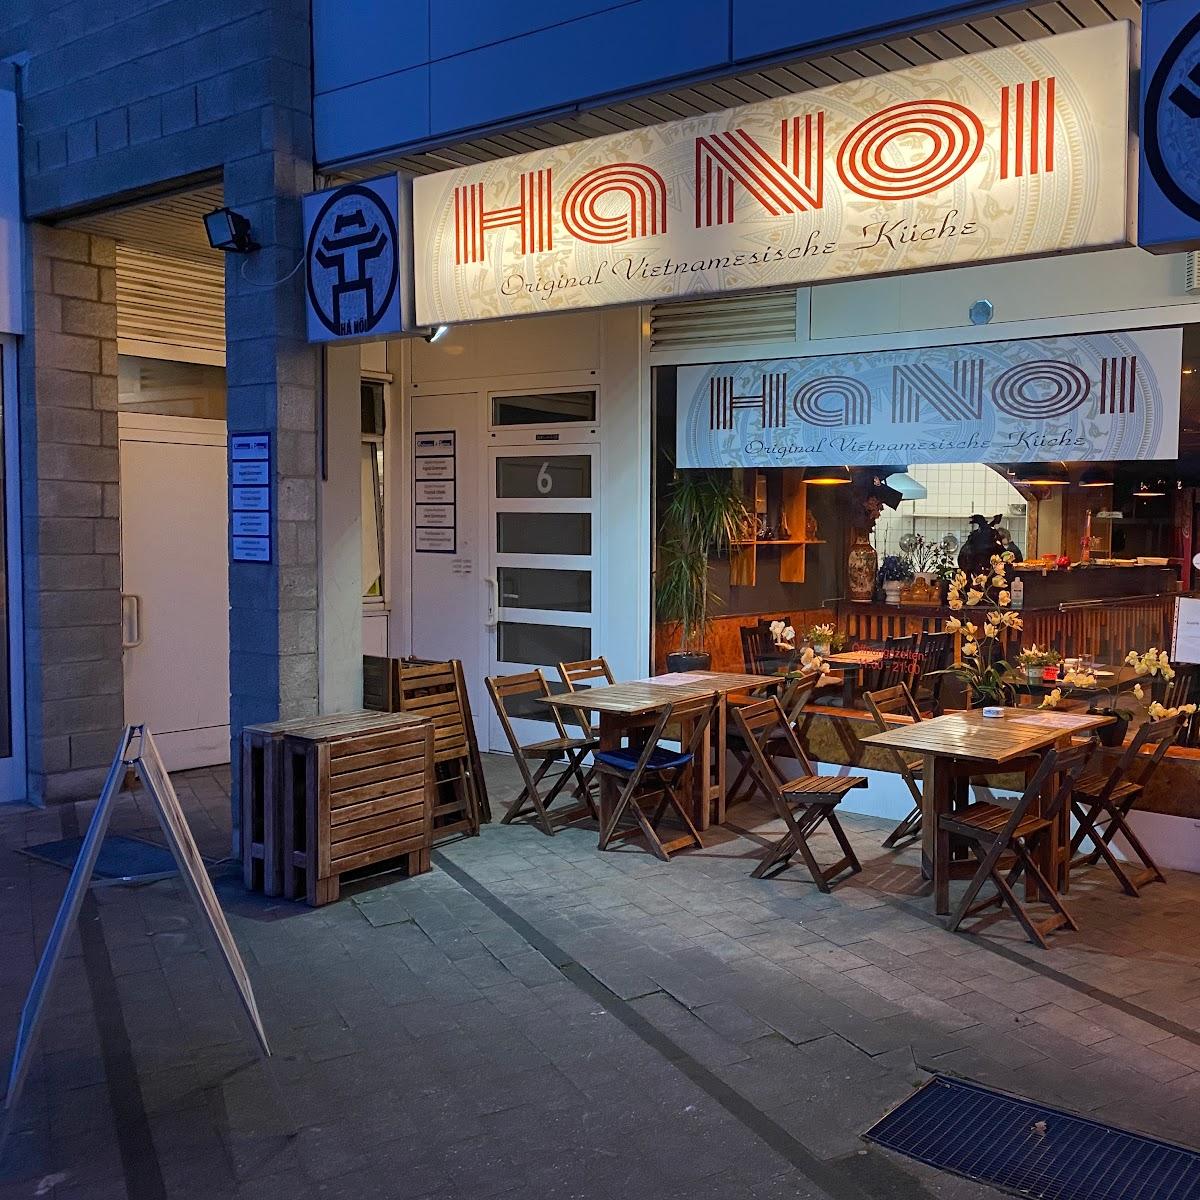 Restaurant "Hanoi - Original vietnamesische Küche" in Hennef (Sieg)